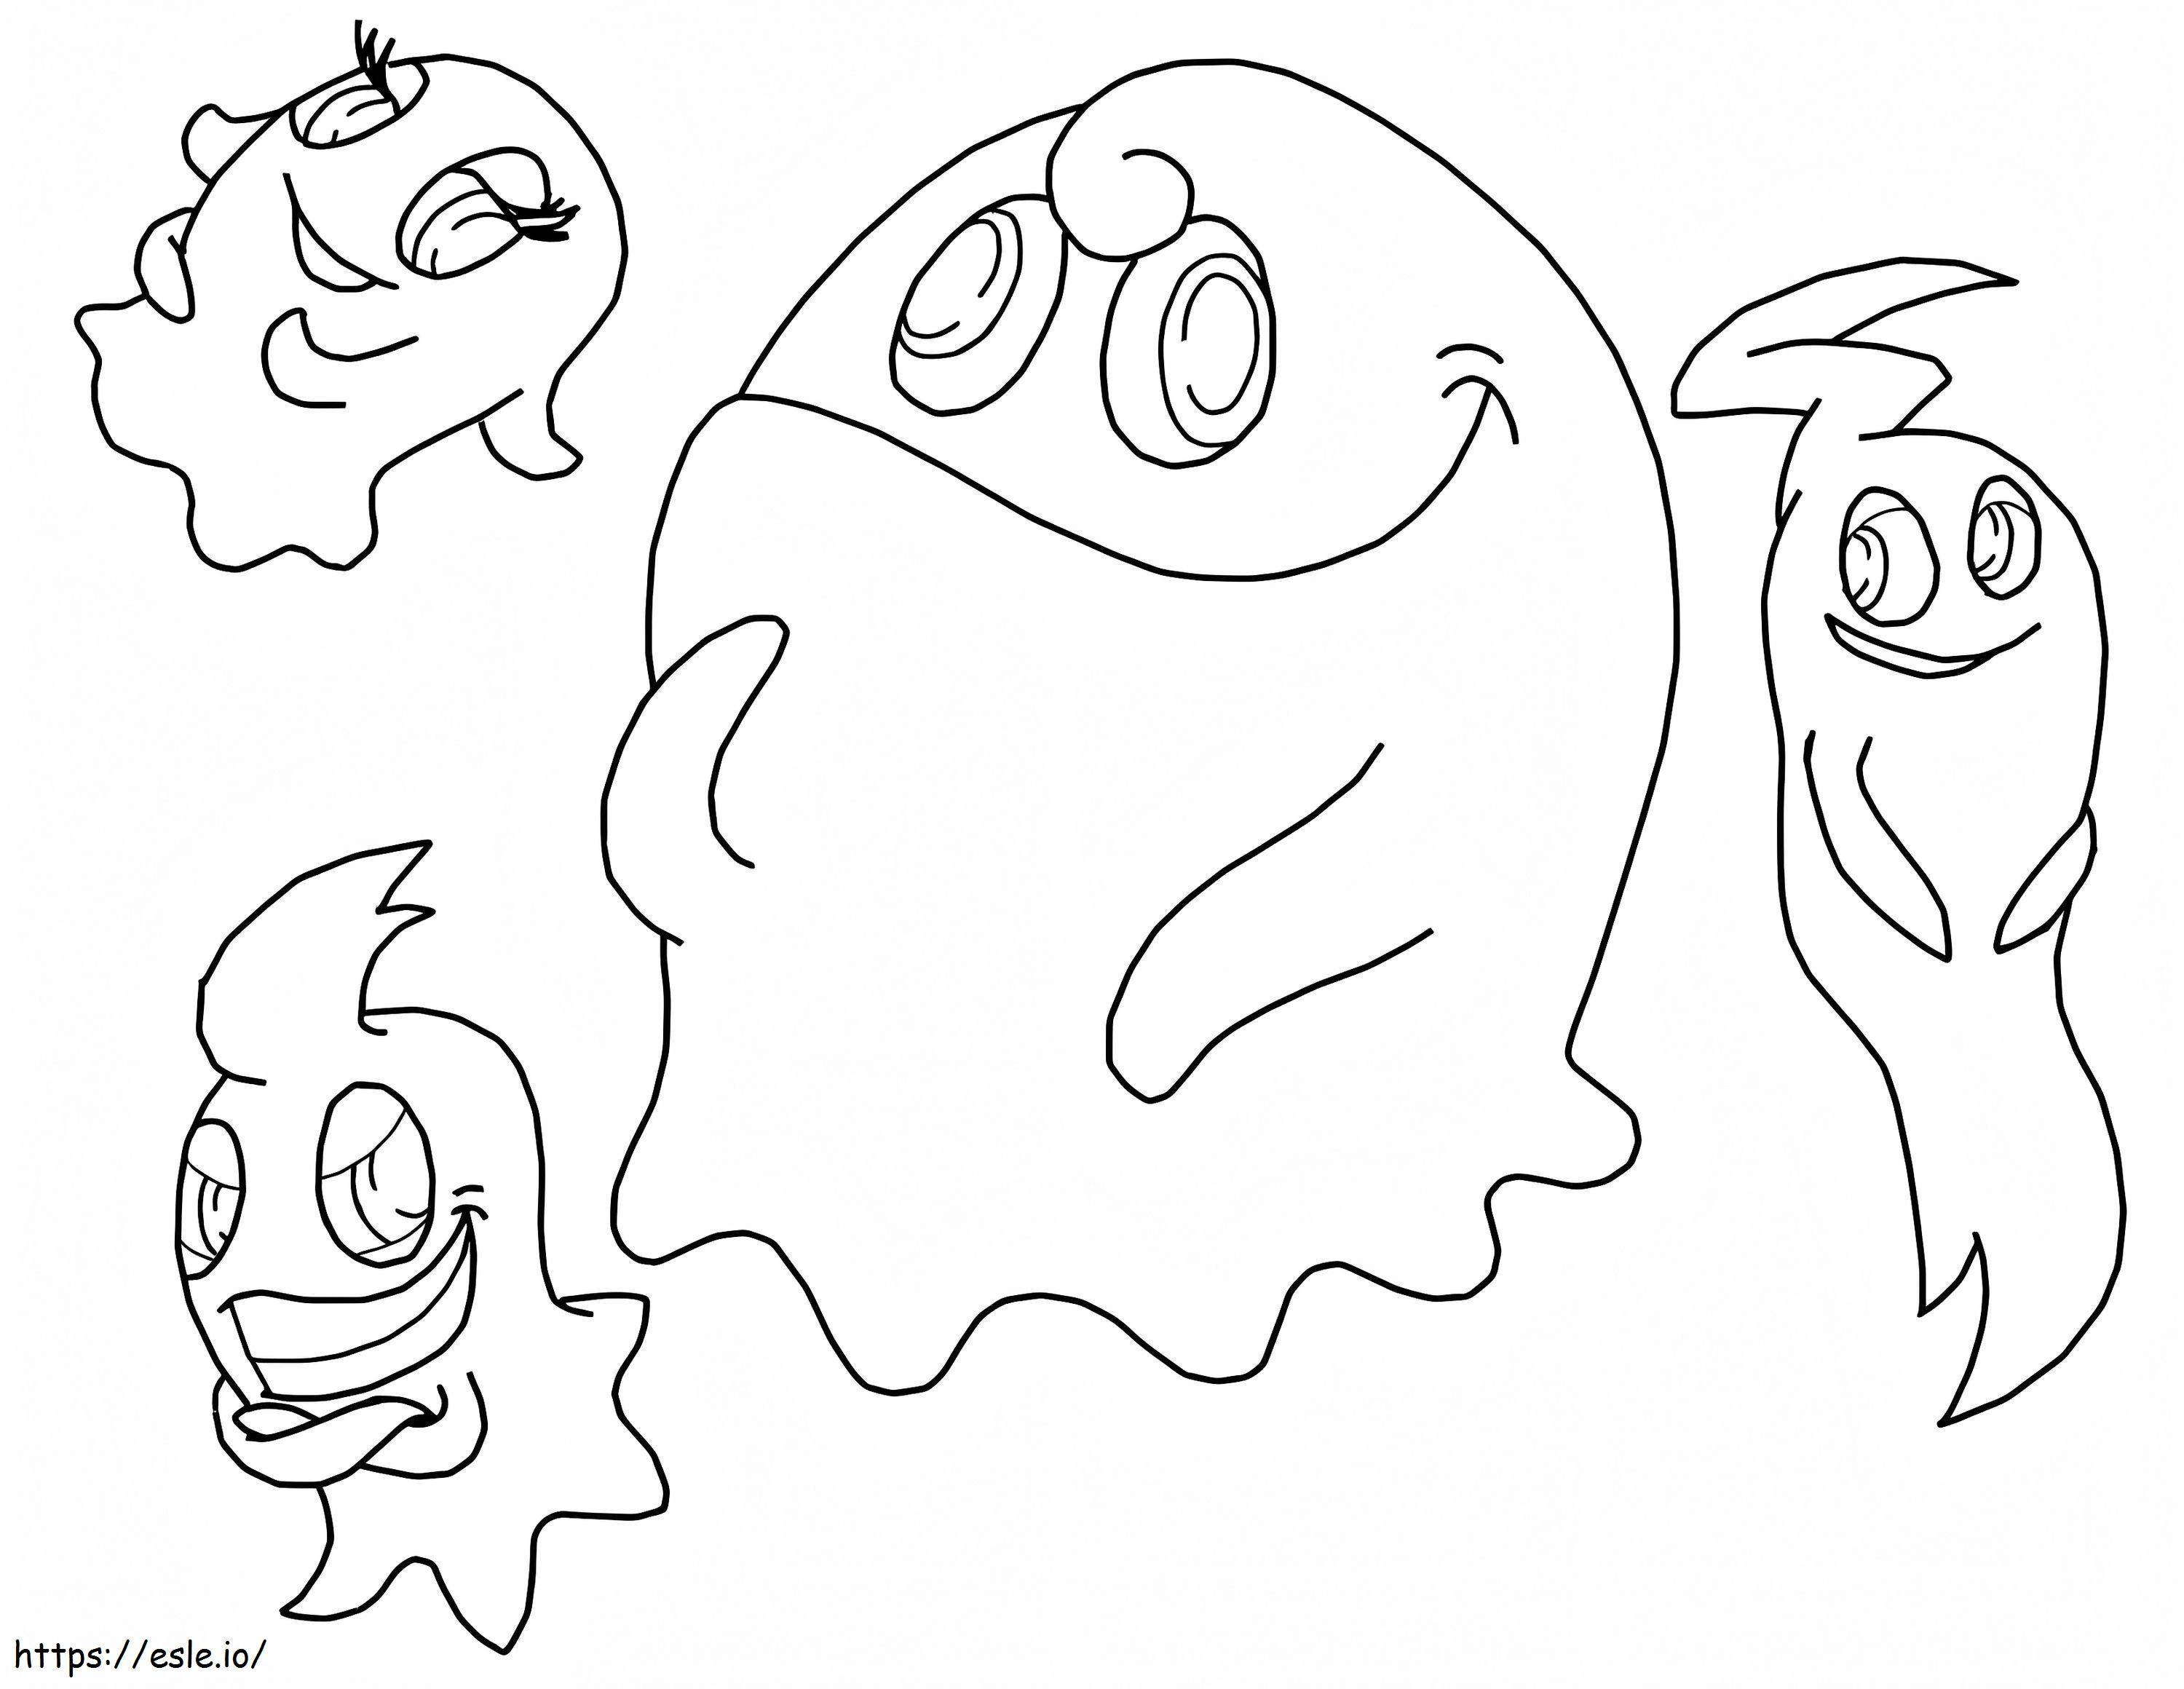 Patru fantome în Pacman de colorat